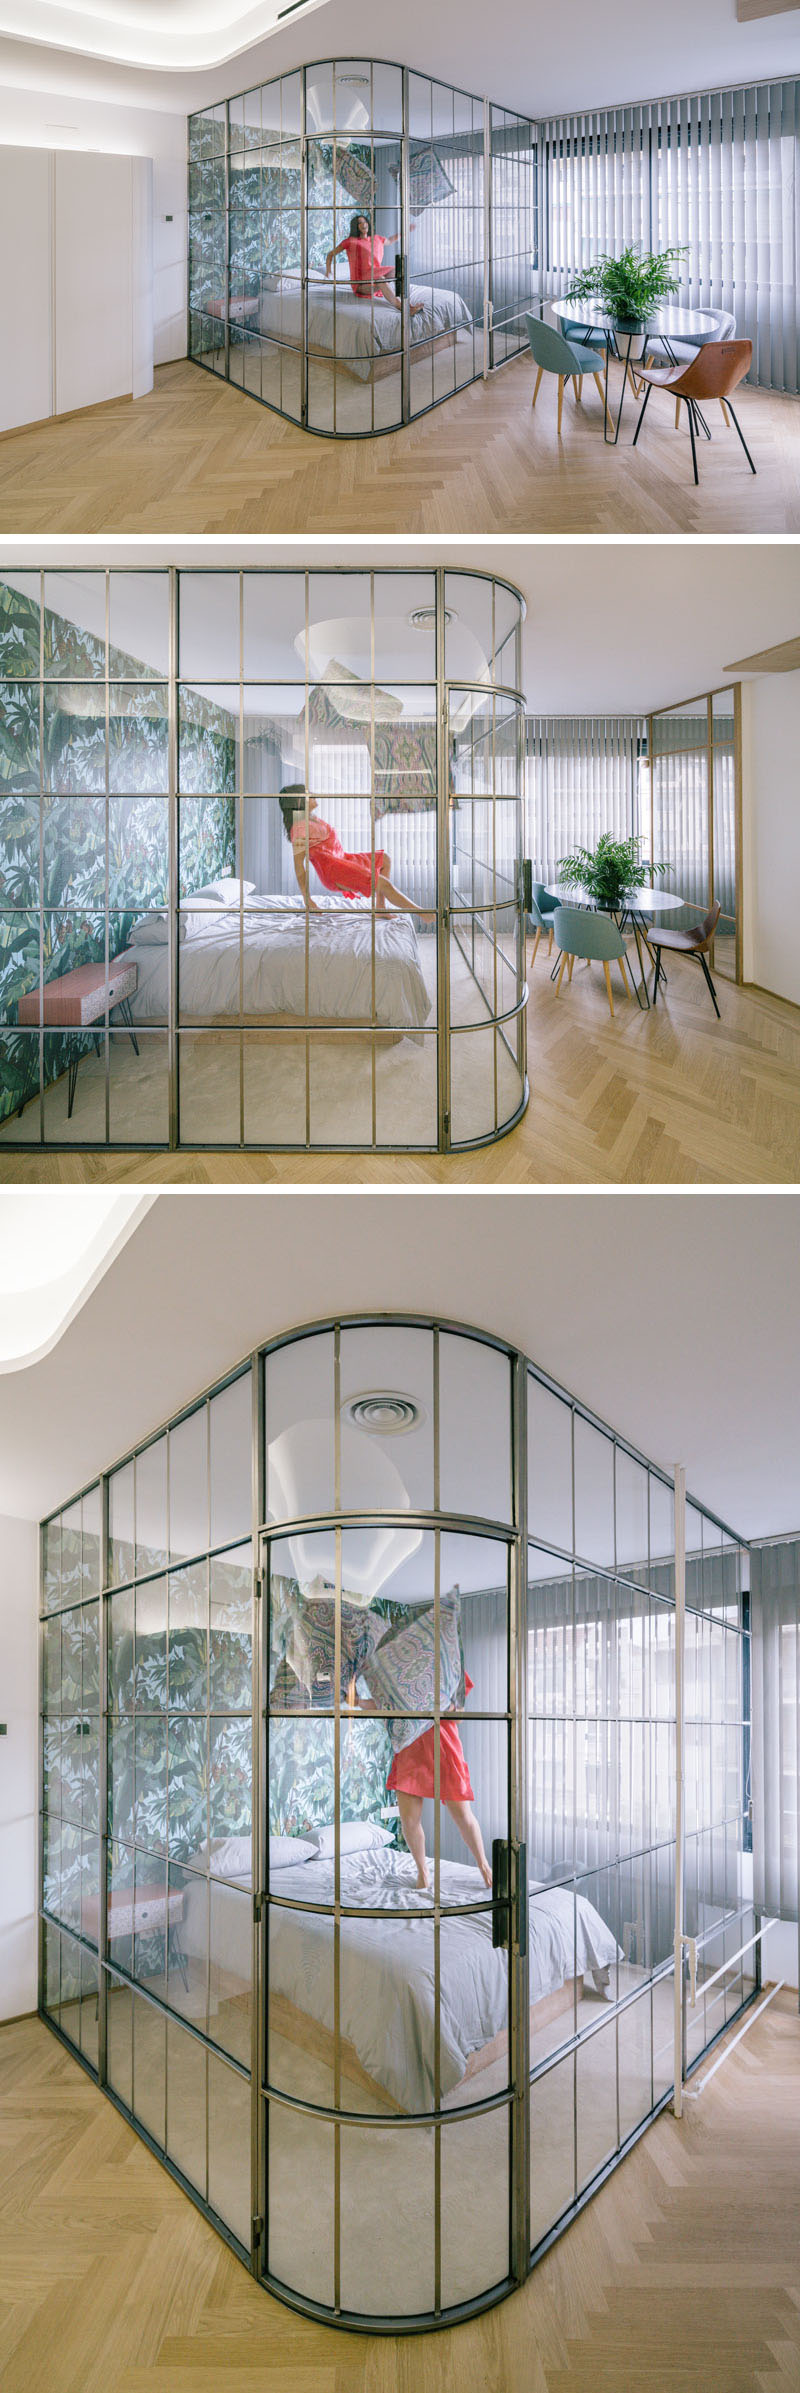 Detalii de proiectare - Dormitor și baie închise cu sticlă - Detalii de proiectare - Dormitor